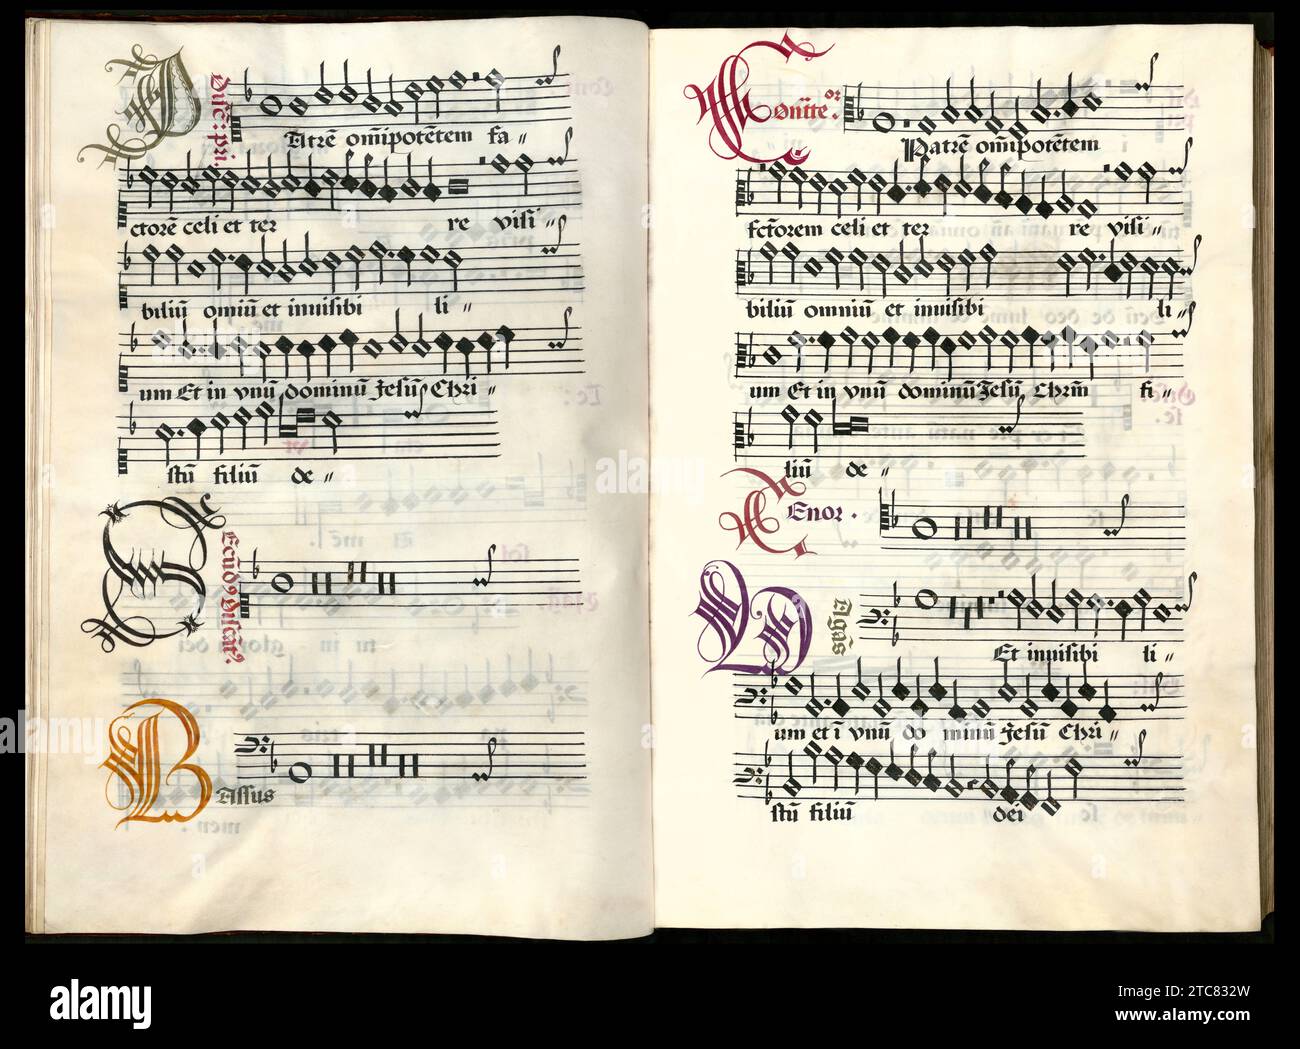 Seiten aus einem Chorbuch mit Messen aus der Zeit Josquin des Prez Stockfoto